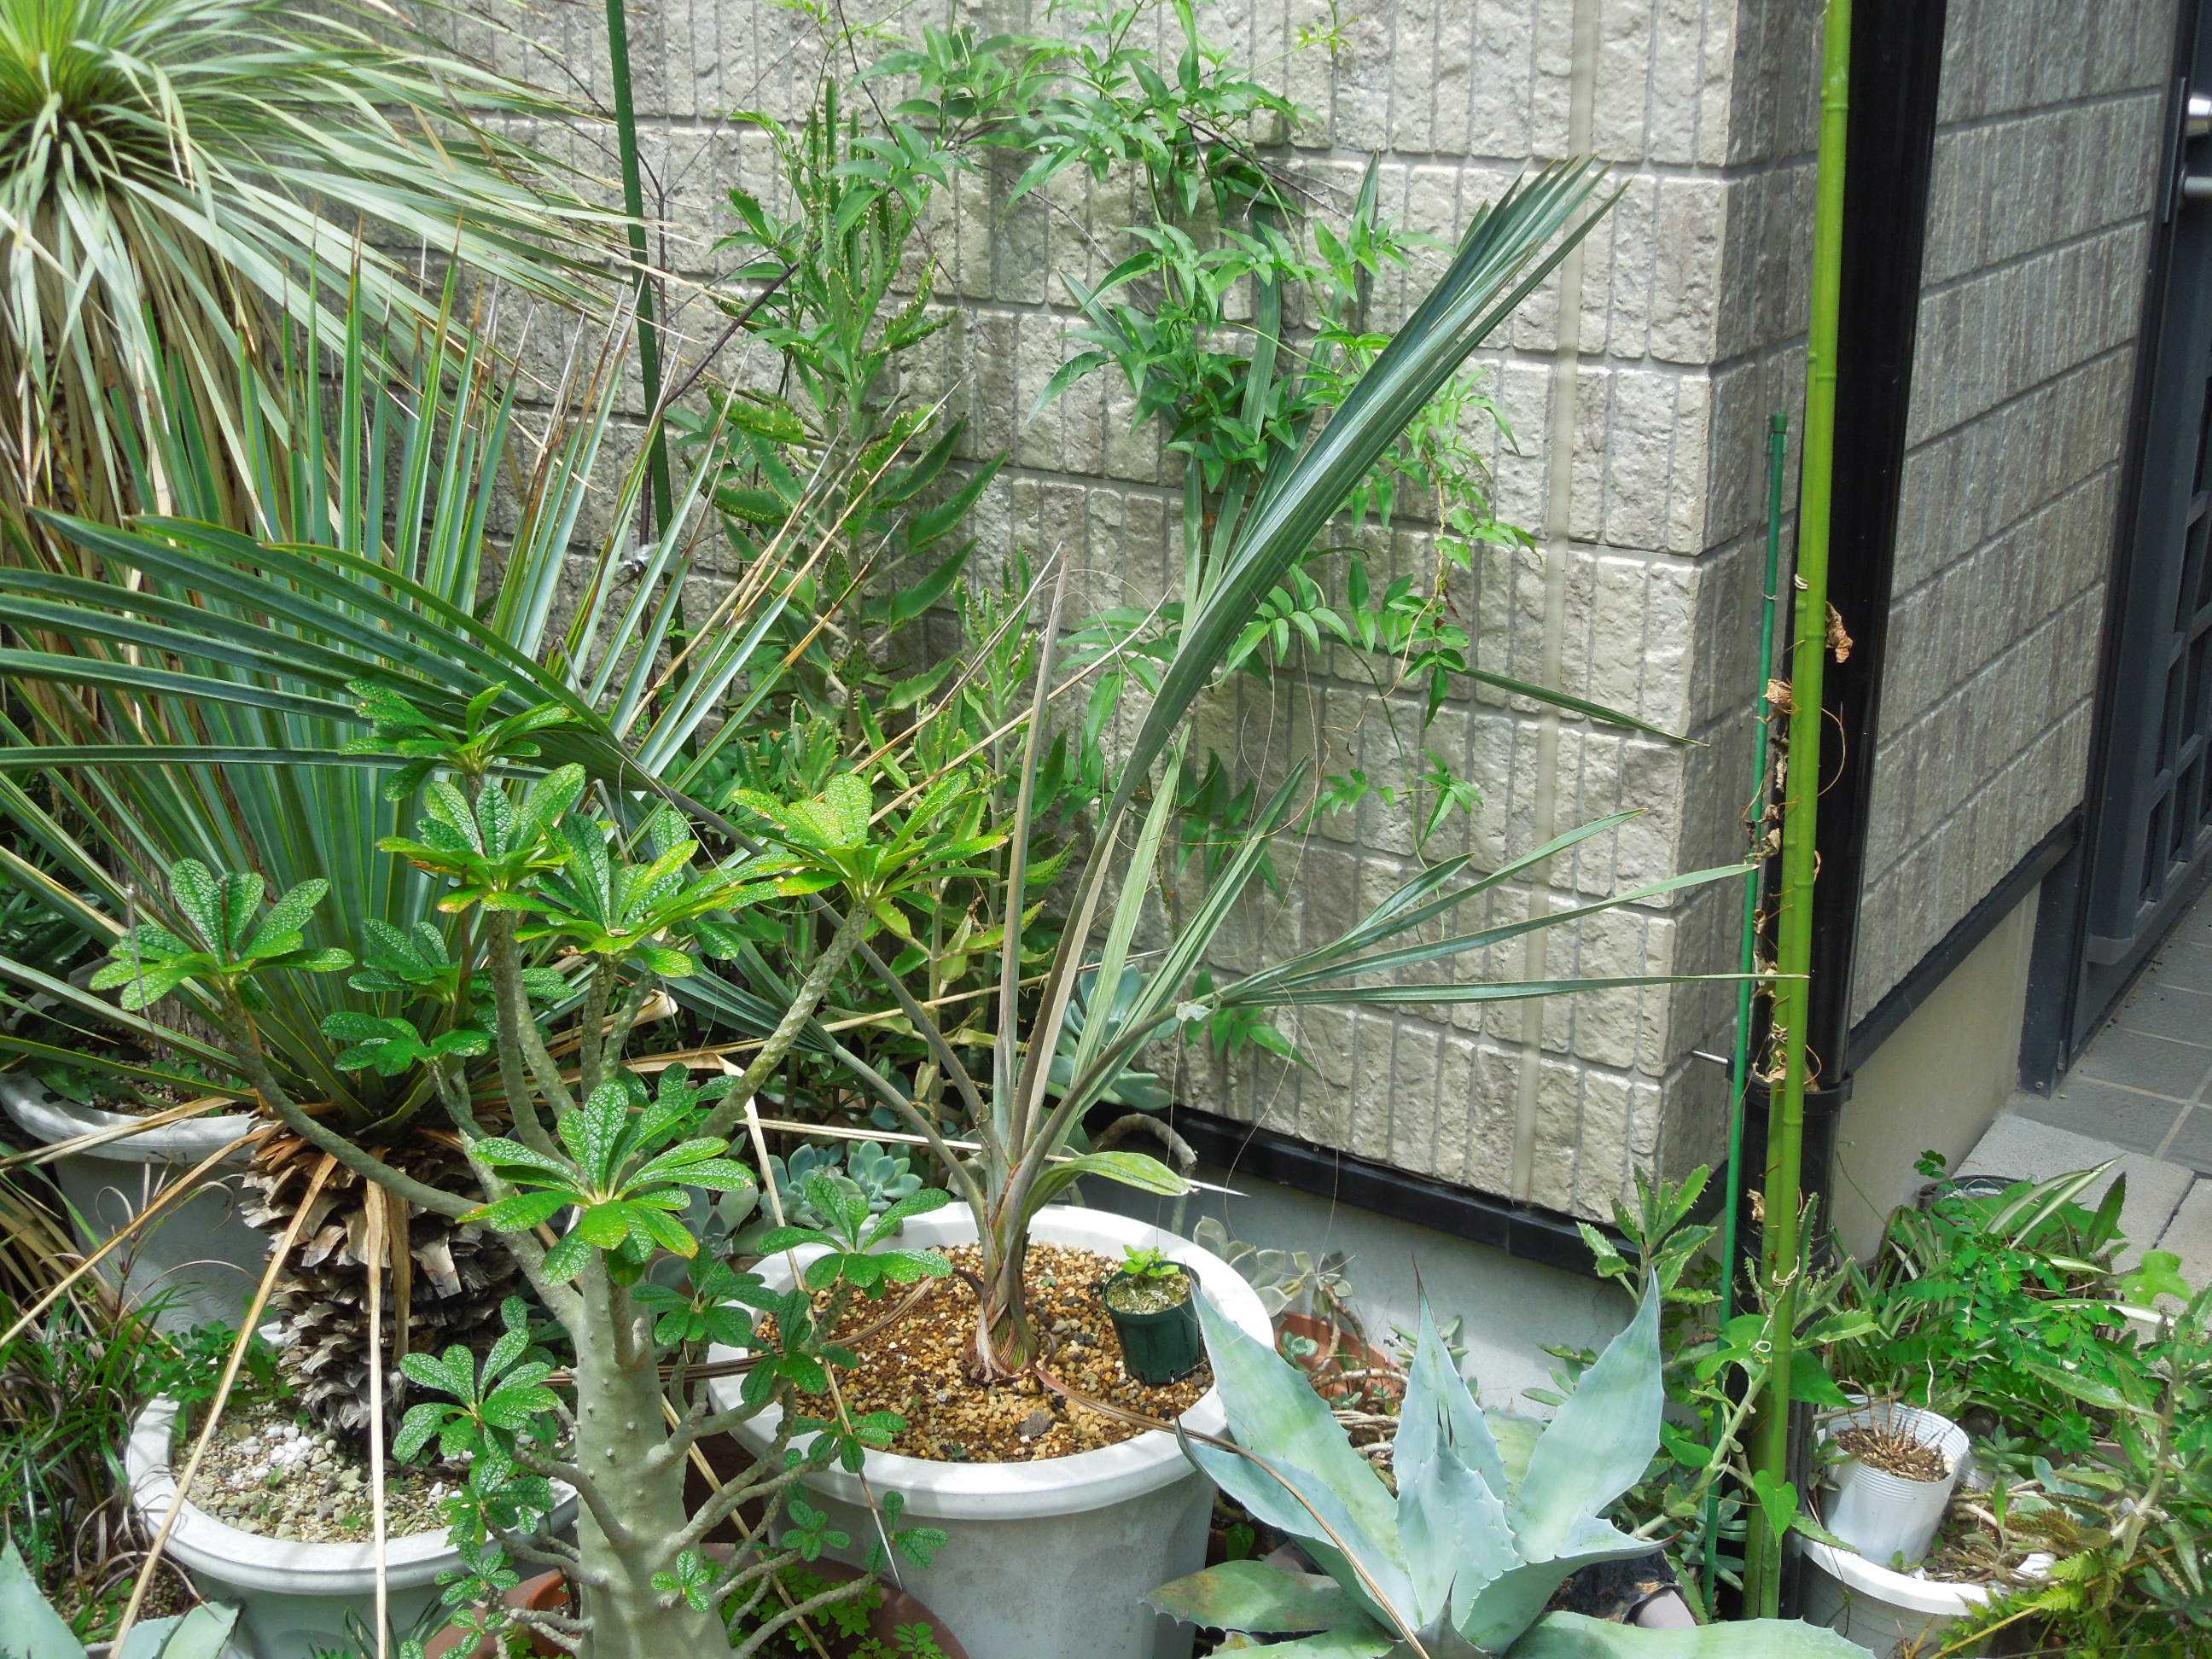 ビスマルキア・ノビリス・シルバー(Bismarckia nobilis silver)植え